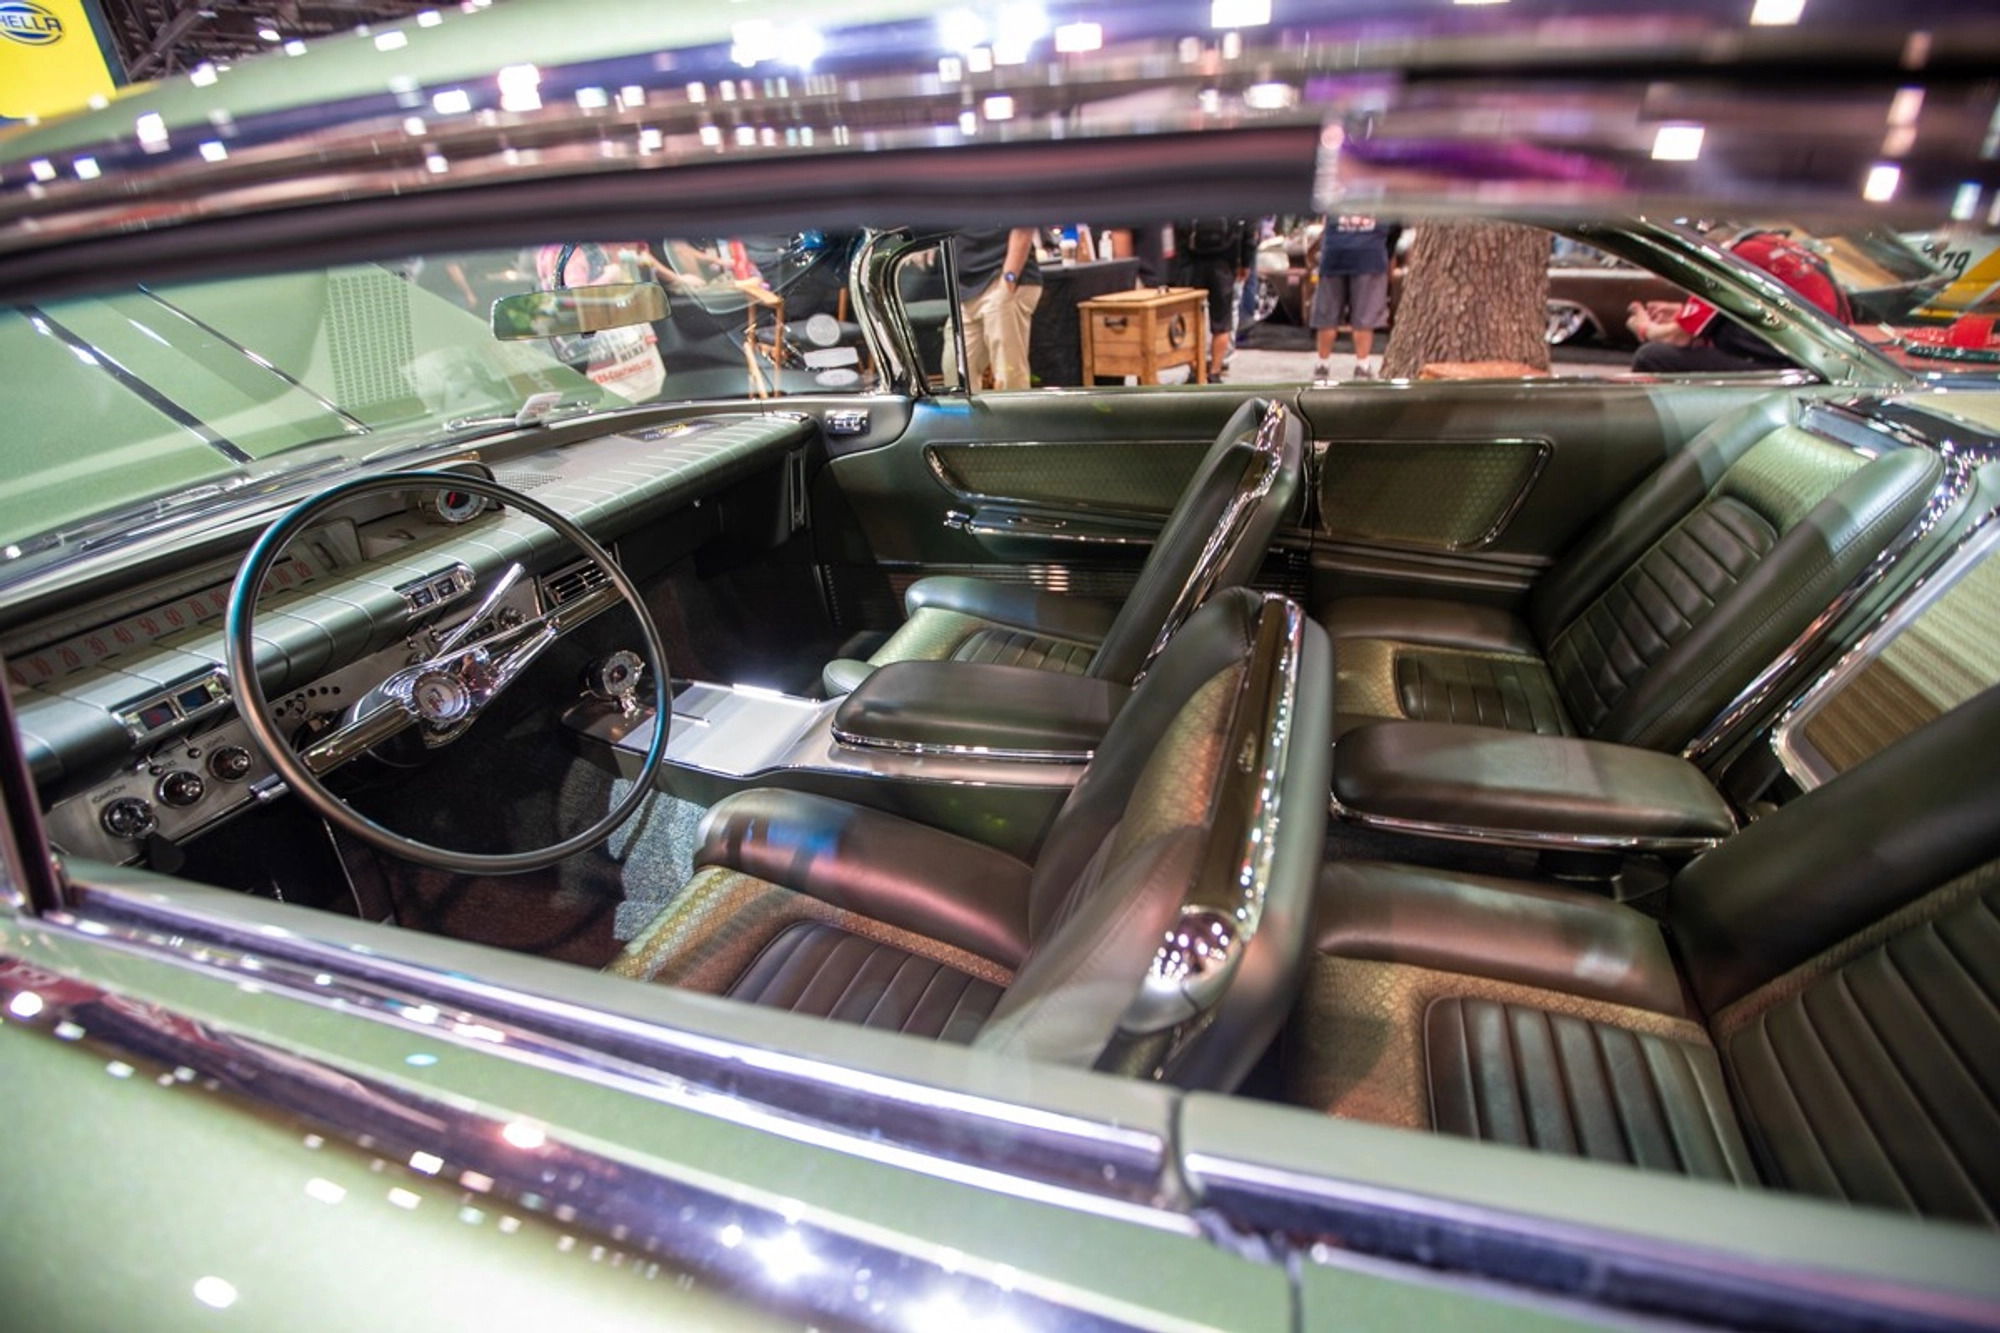 Andy Leach 1960 Buick Invicta interior.